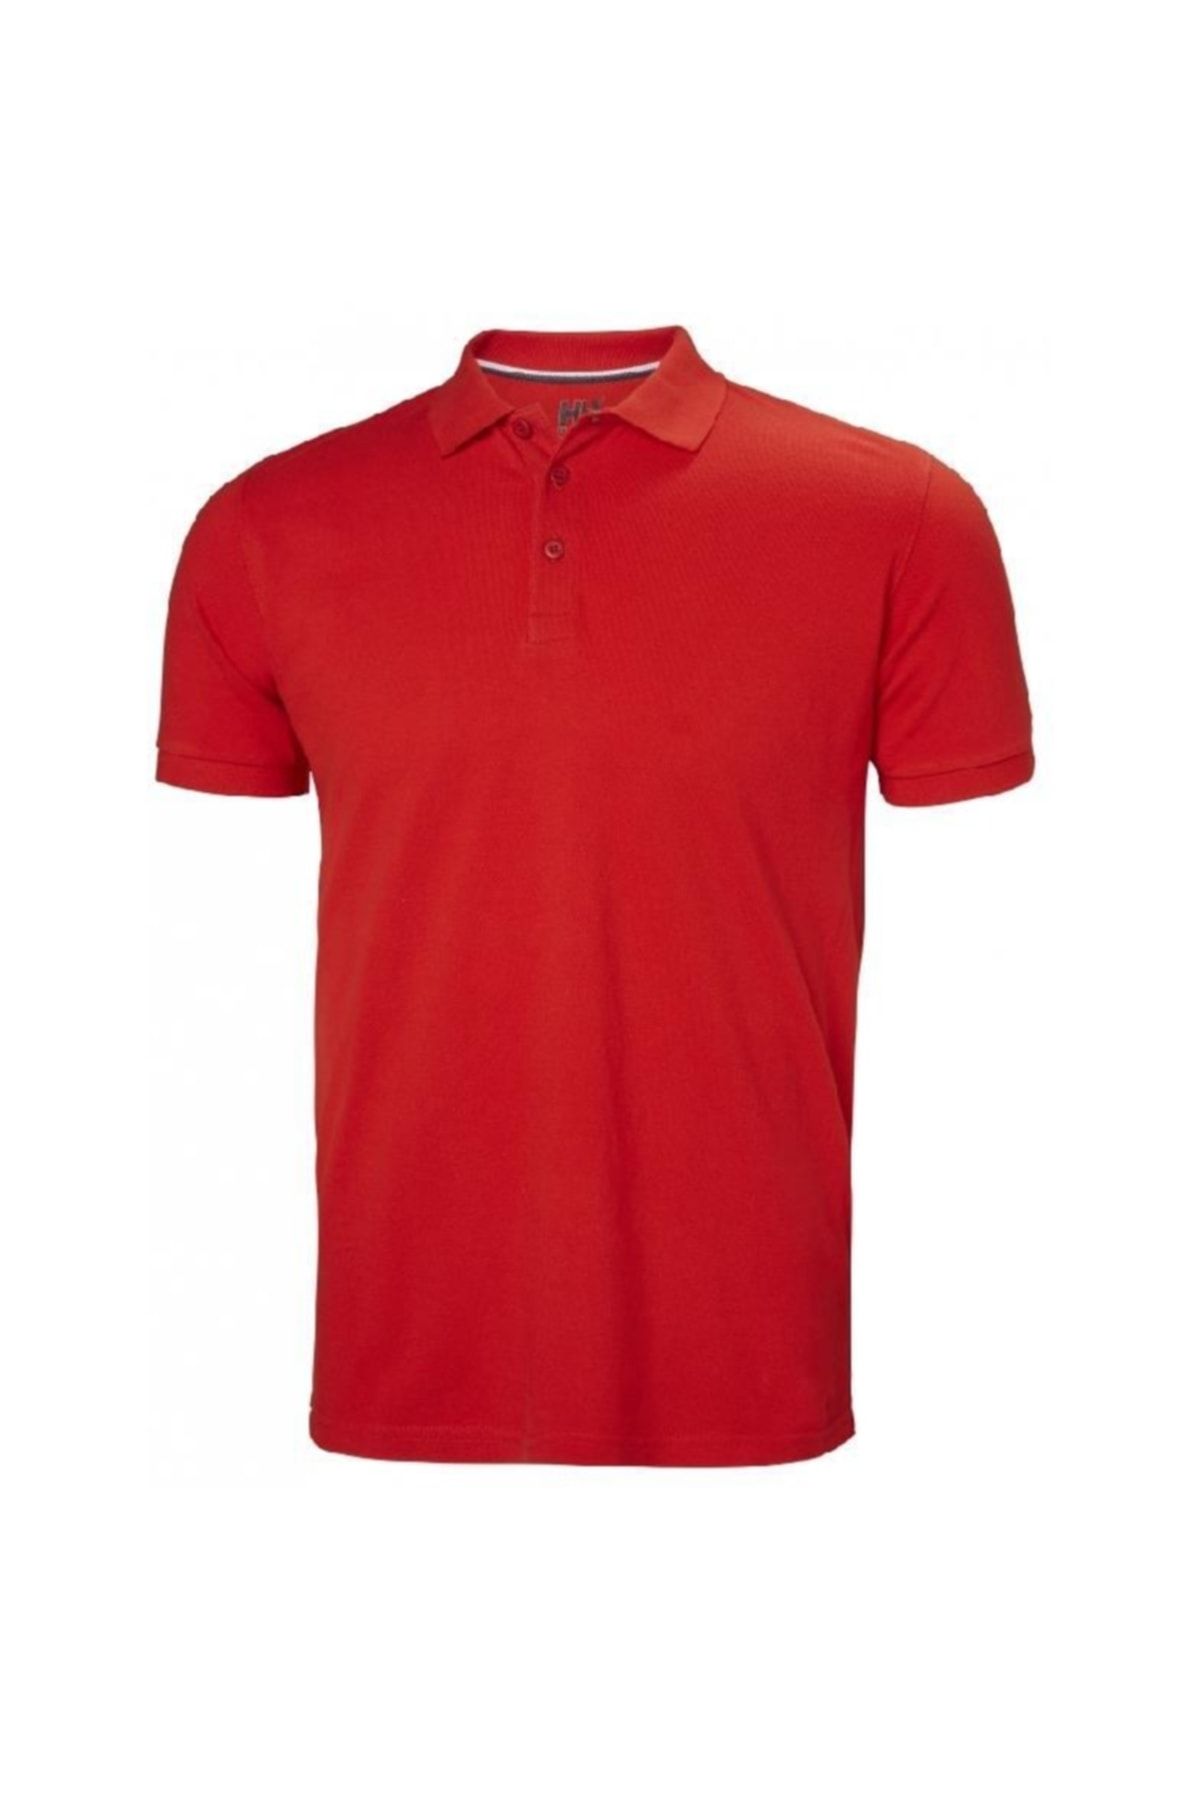 Helly Hansen Crew Polo Erkek T-shirt Kırmızı 34004.162